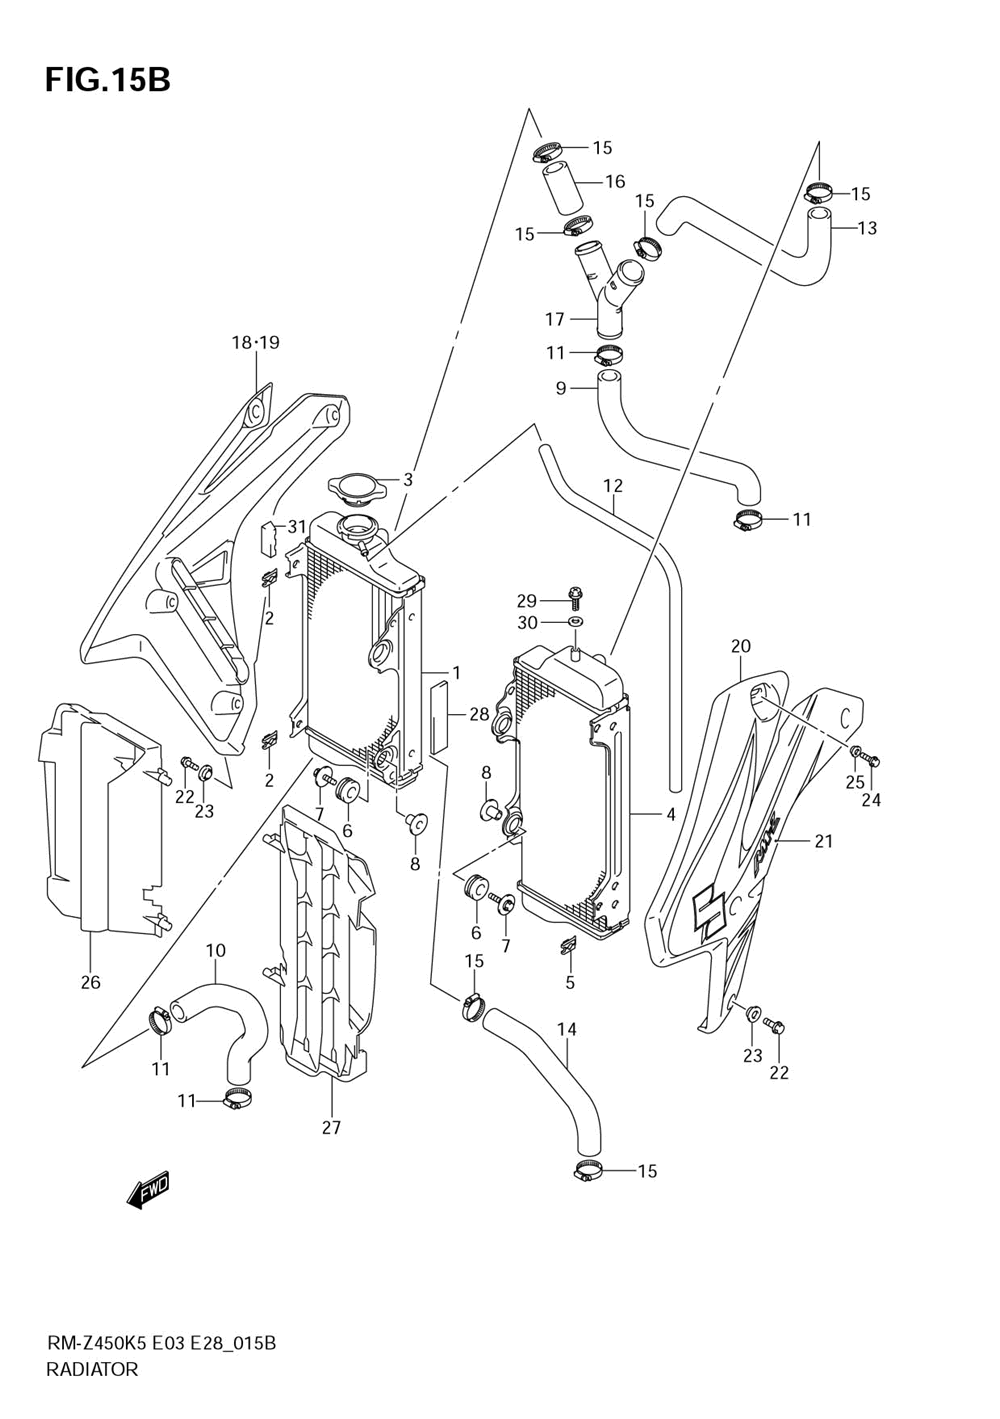 Radiator (model k7)